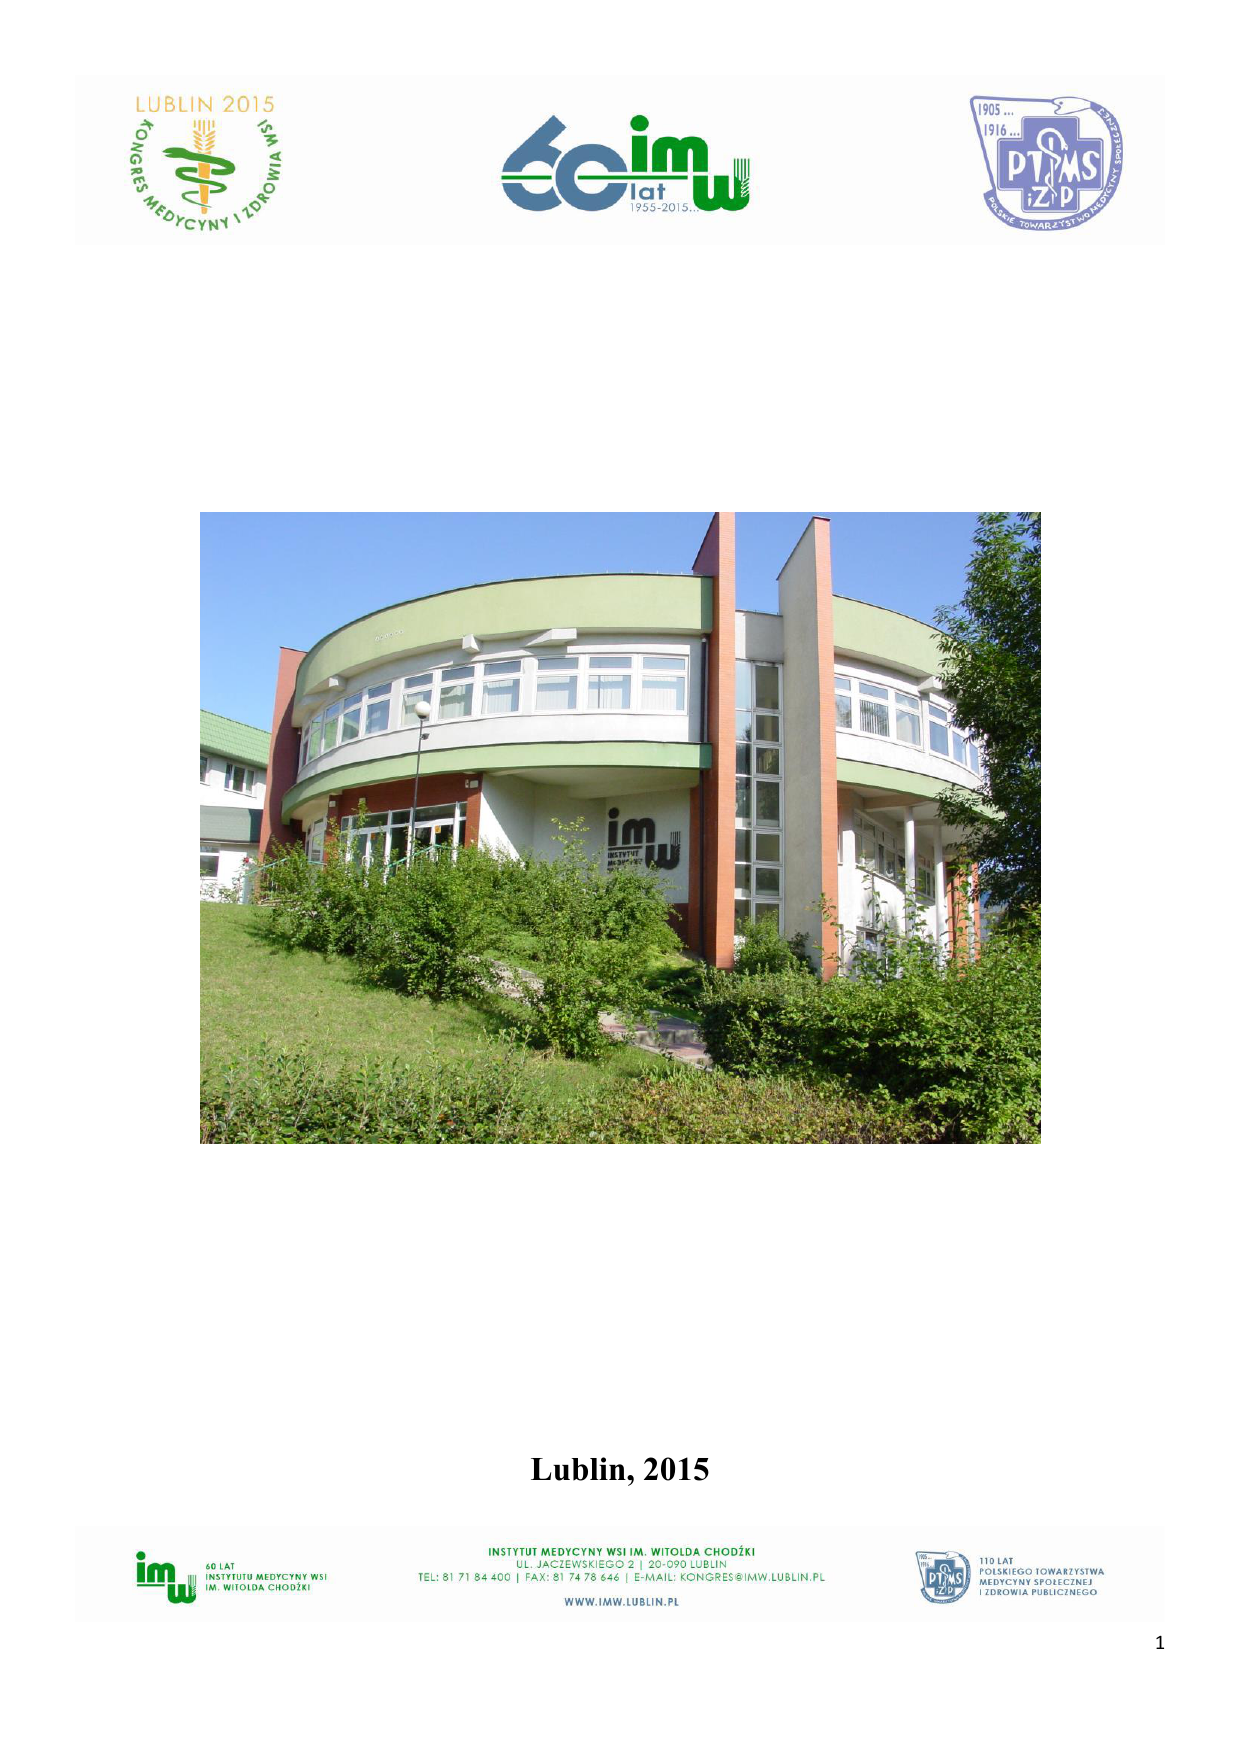 lublin-2015-instytut-medycyny-wsi-im-witolda-chod-ki-w-lublinie